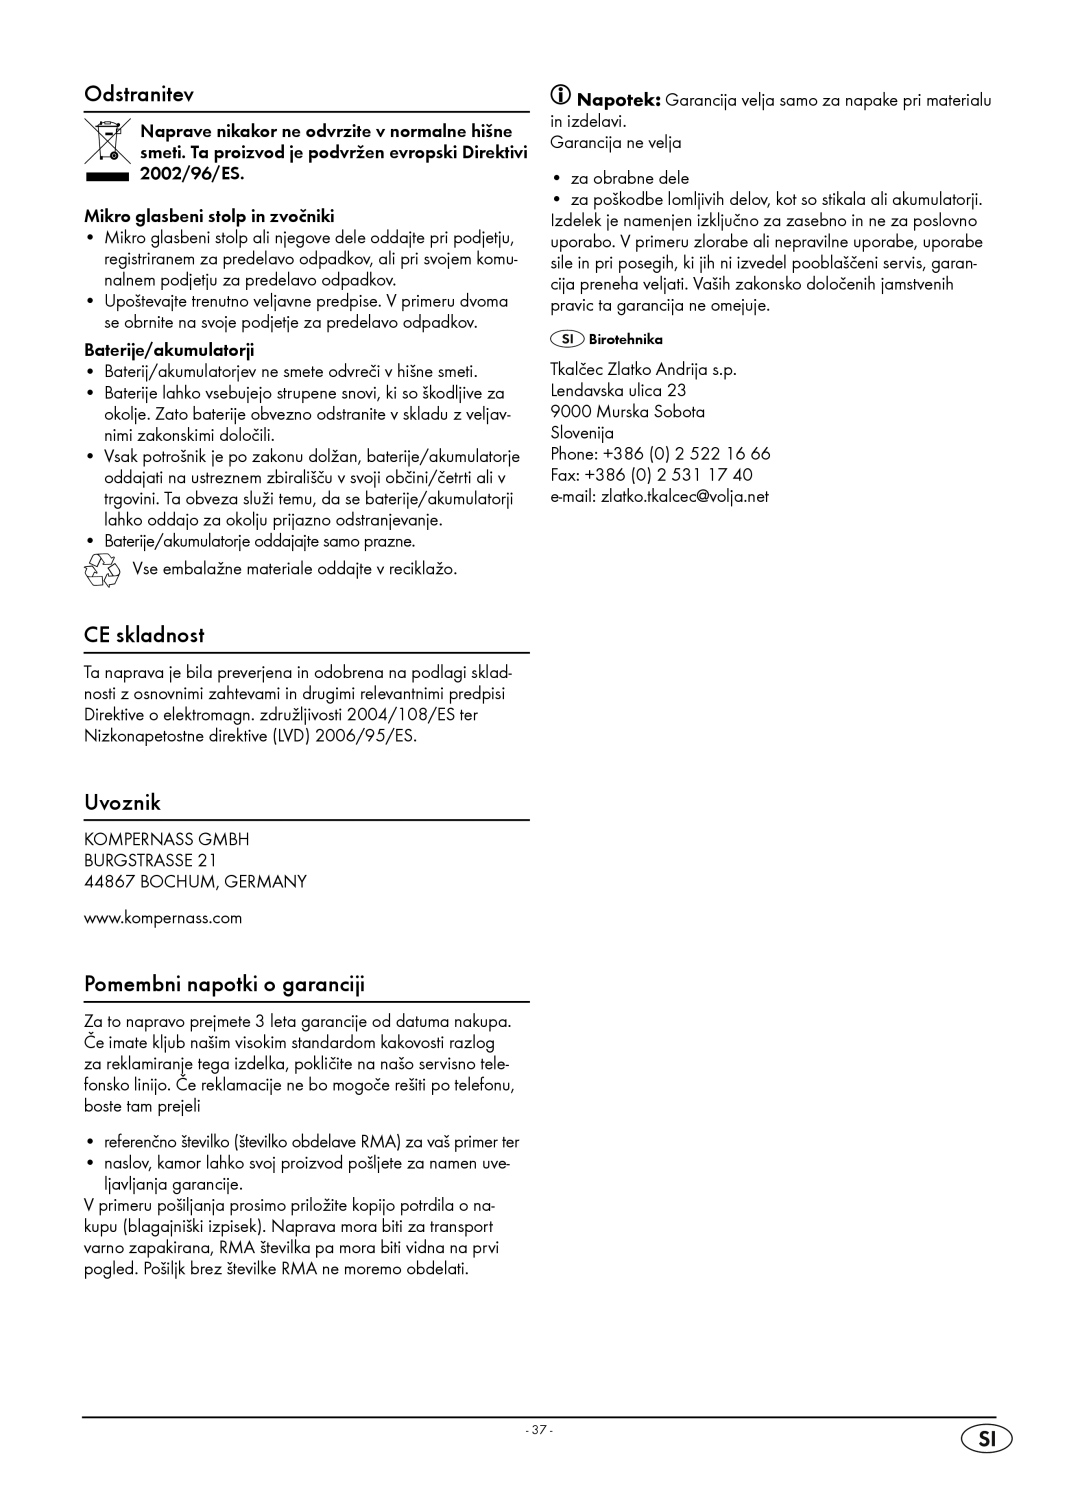 Kompernass KH 2316 manual Odstranitev, CE skladnost, Pomembni napotki o garanciji, Uvoznik 